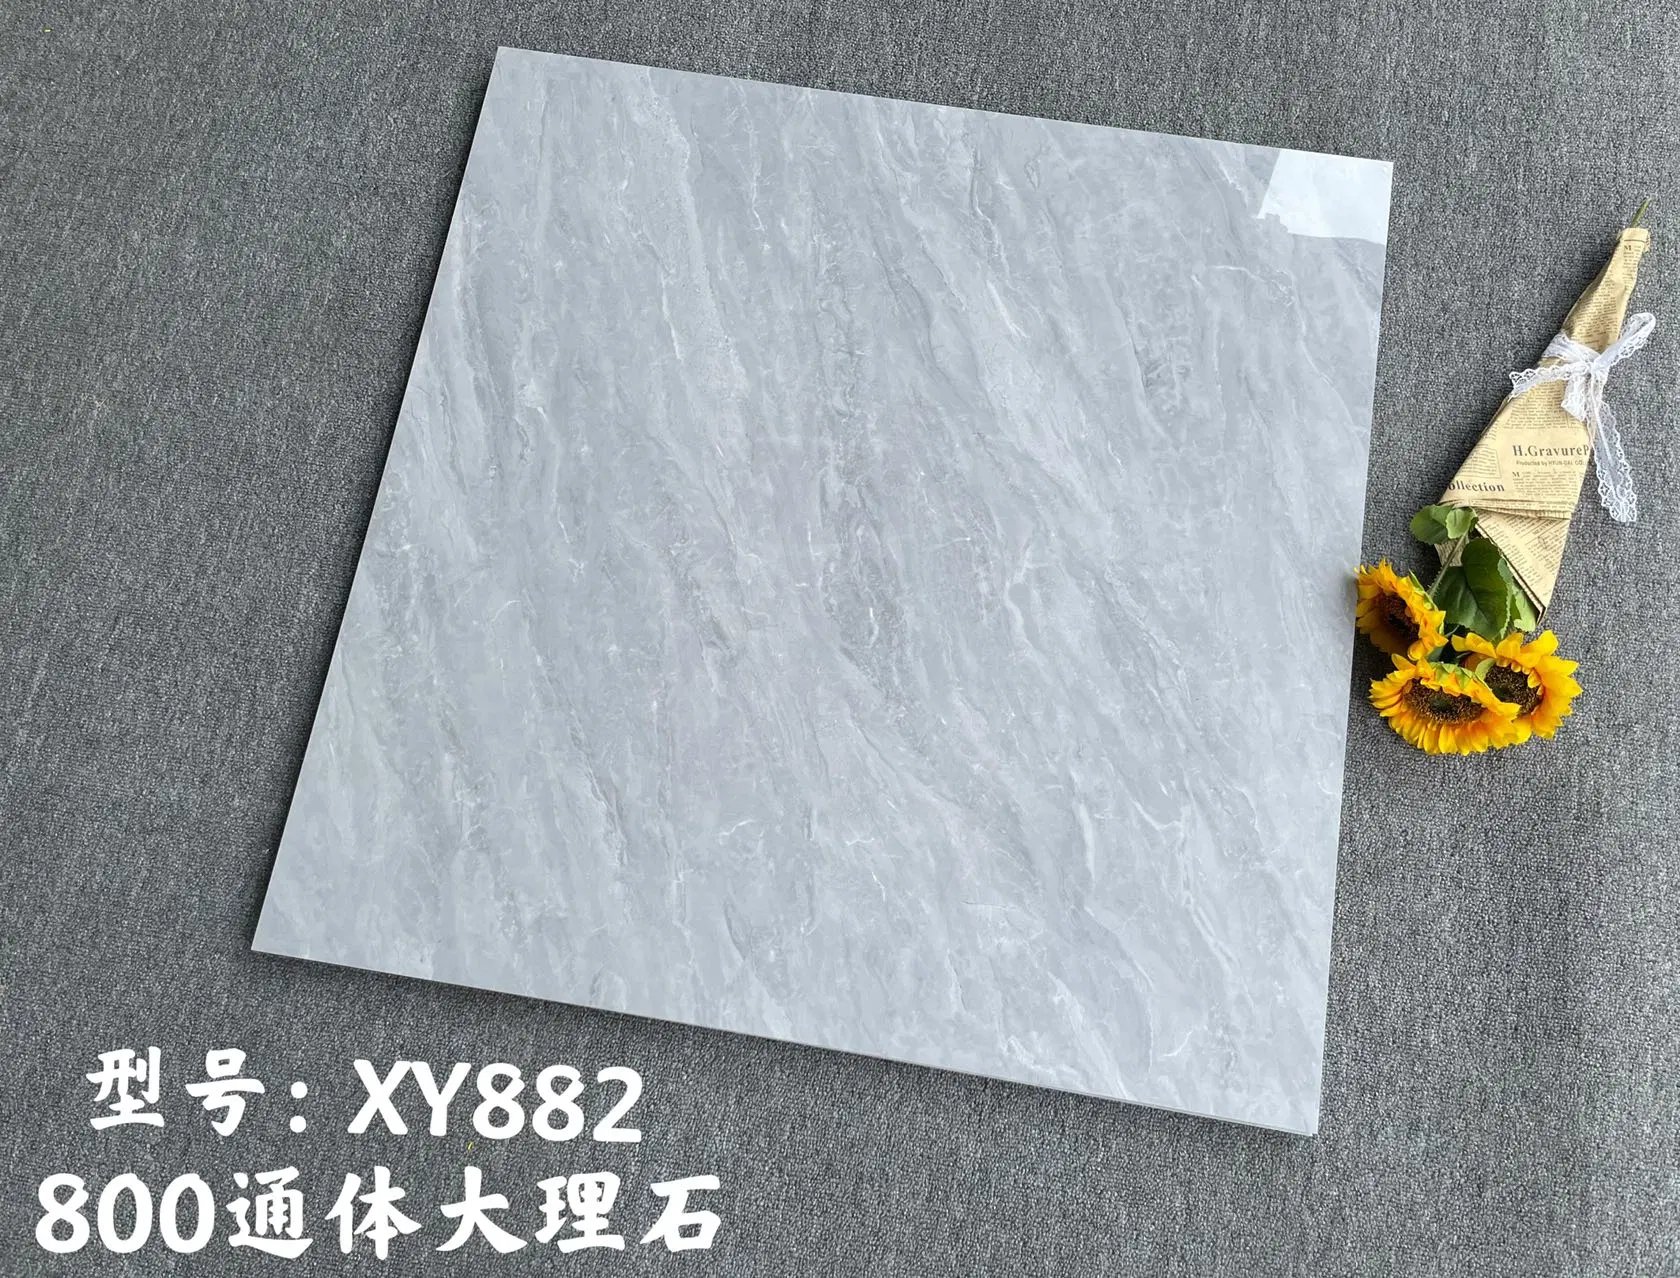 China Guangdong Keramik Marmor Bodenfliesen Wohnzimmer Modern Grey Bodenfliesen 800 * 800 Schlafzimmer Ziegel Marmor Fliesen Non-Rutsch Marmor